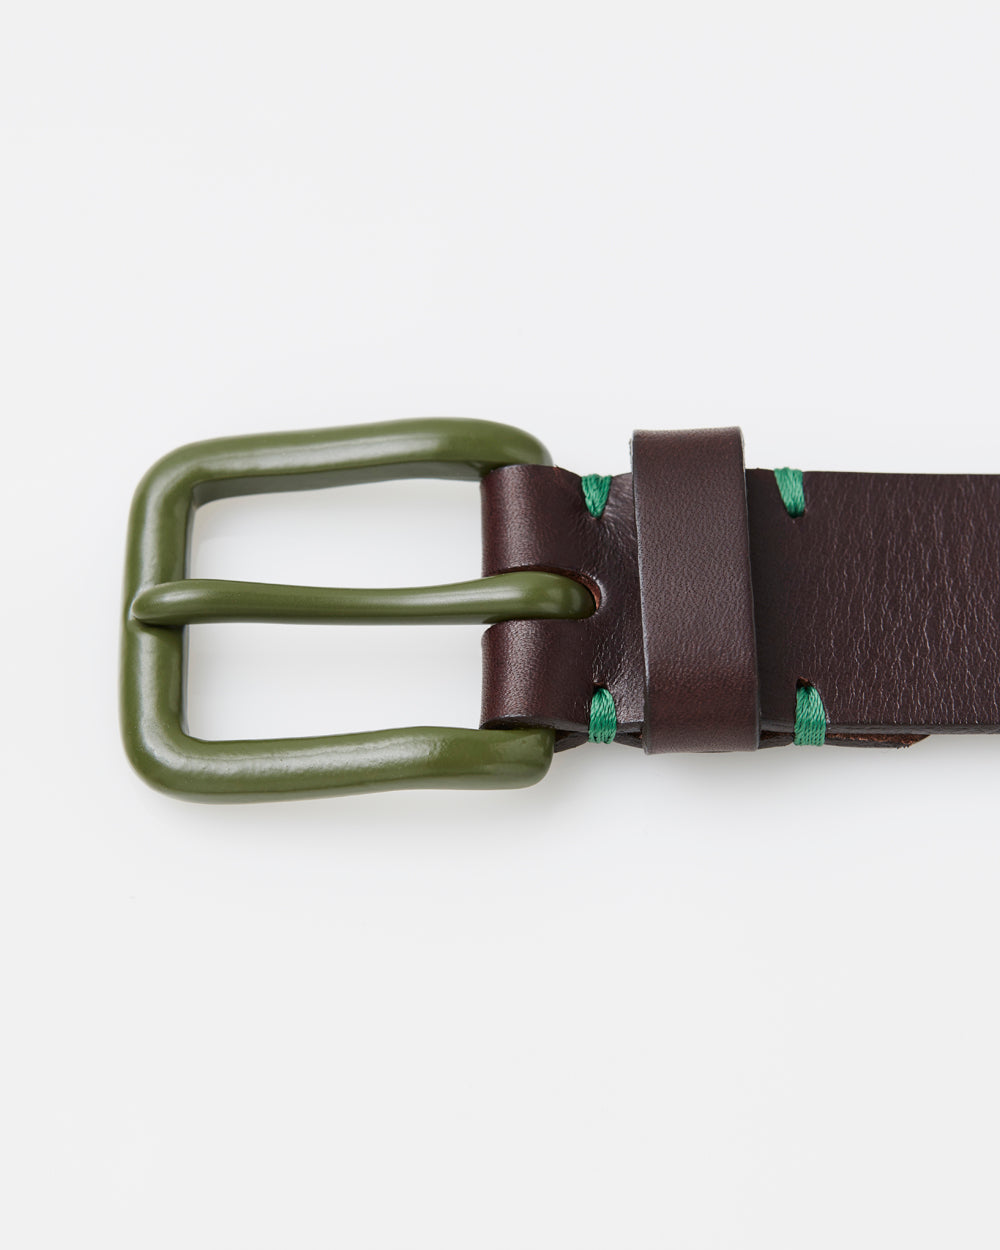 Modernist Belt - Walnut Brown / Olive